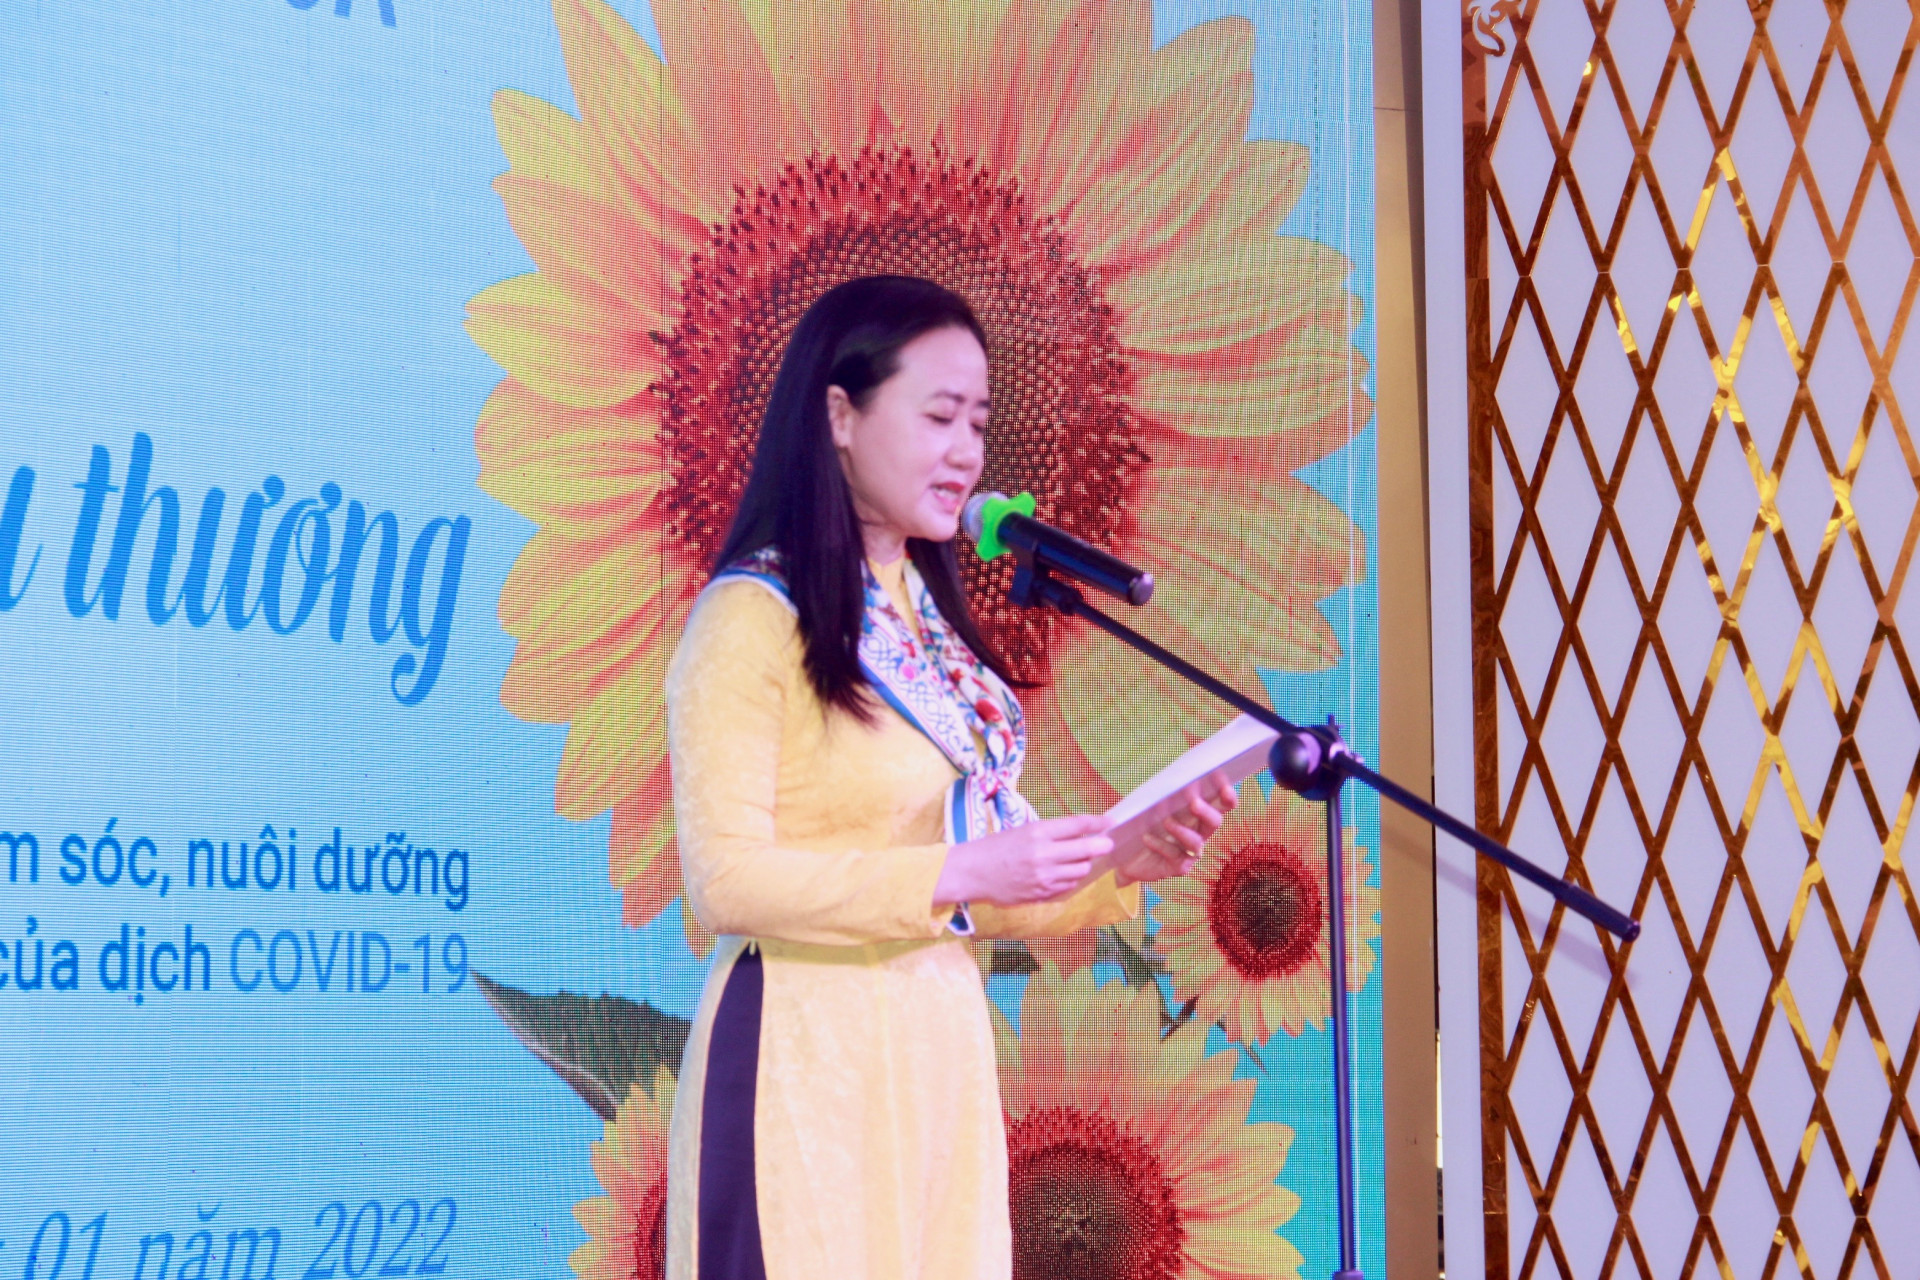 Bà Nguyễn Quỳnh Nga - Chủ tịch Hội Liên hiệp Phụ nữ tỉnh Khánh Hòa phát biểu khai mạc chương trình.